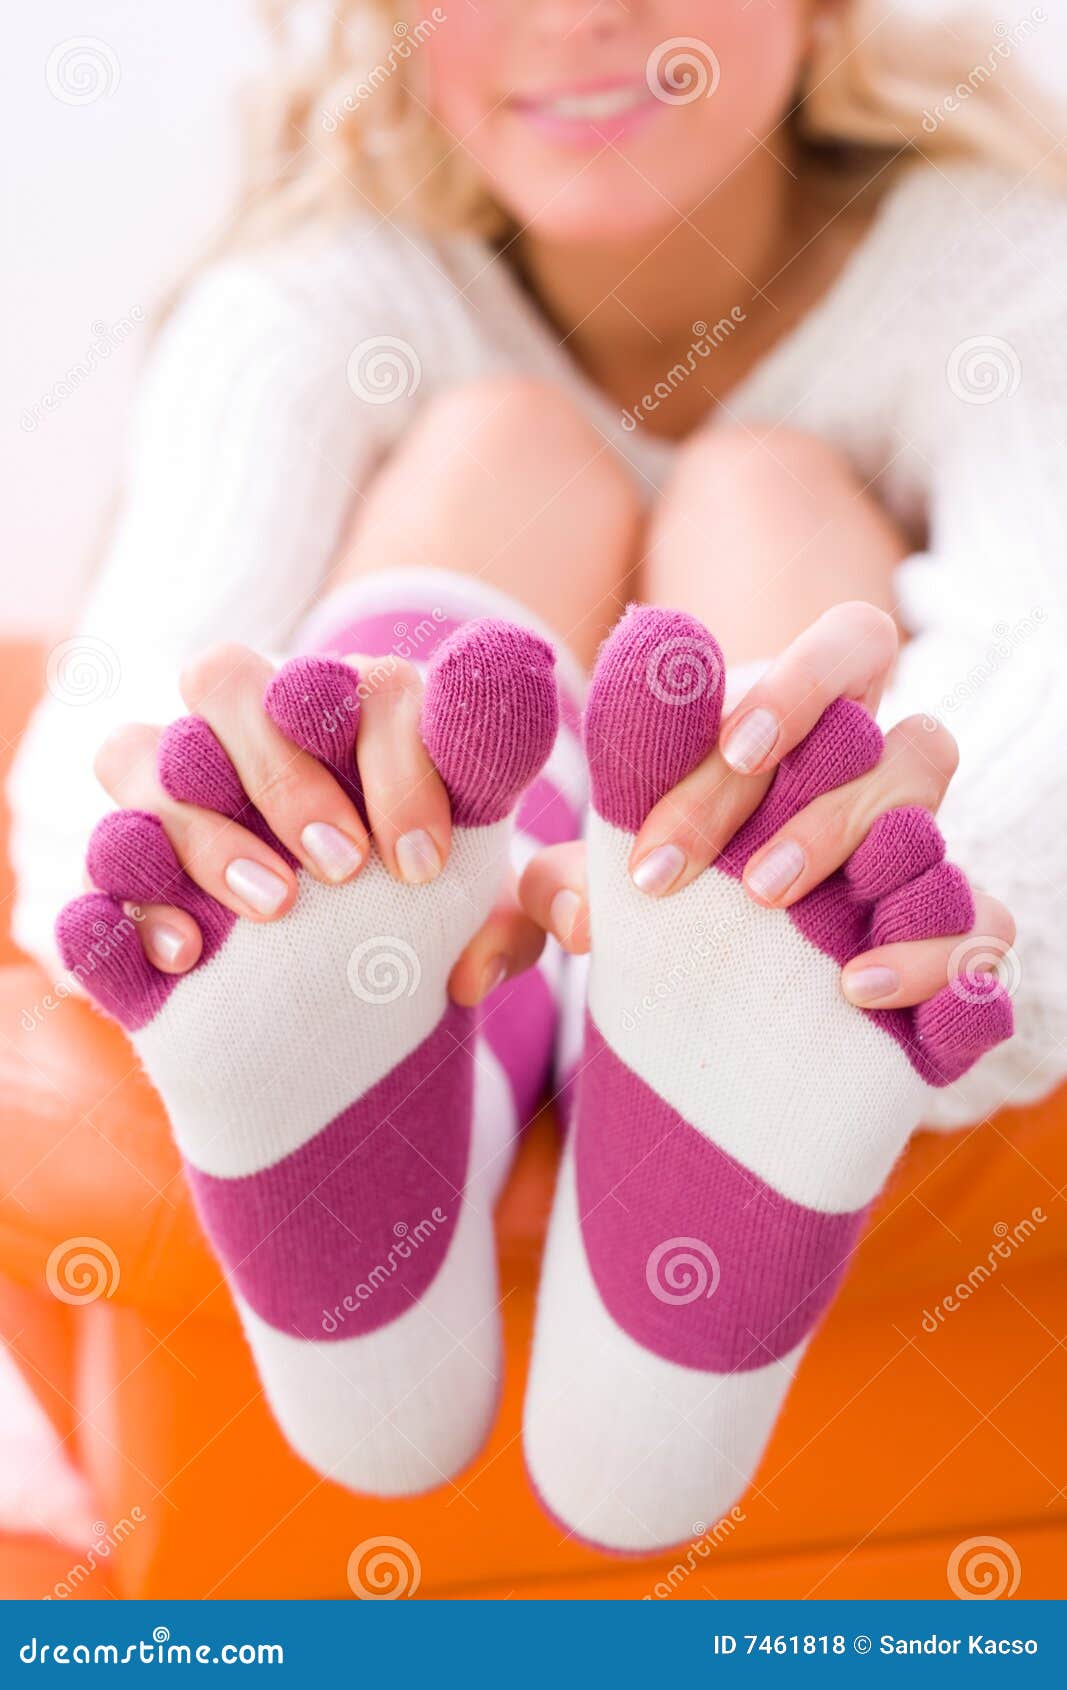 Потные носочки. Ступни в носочках. Девушки в носках. Ножки в розовых носках. Ступни девочек в носках.